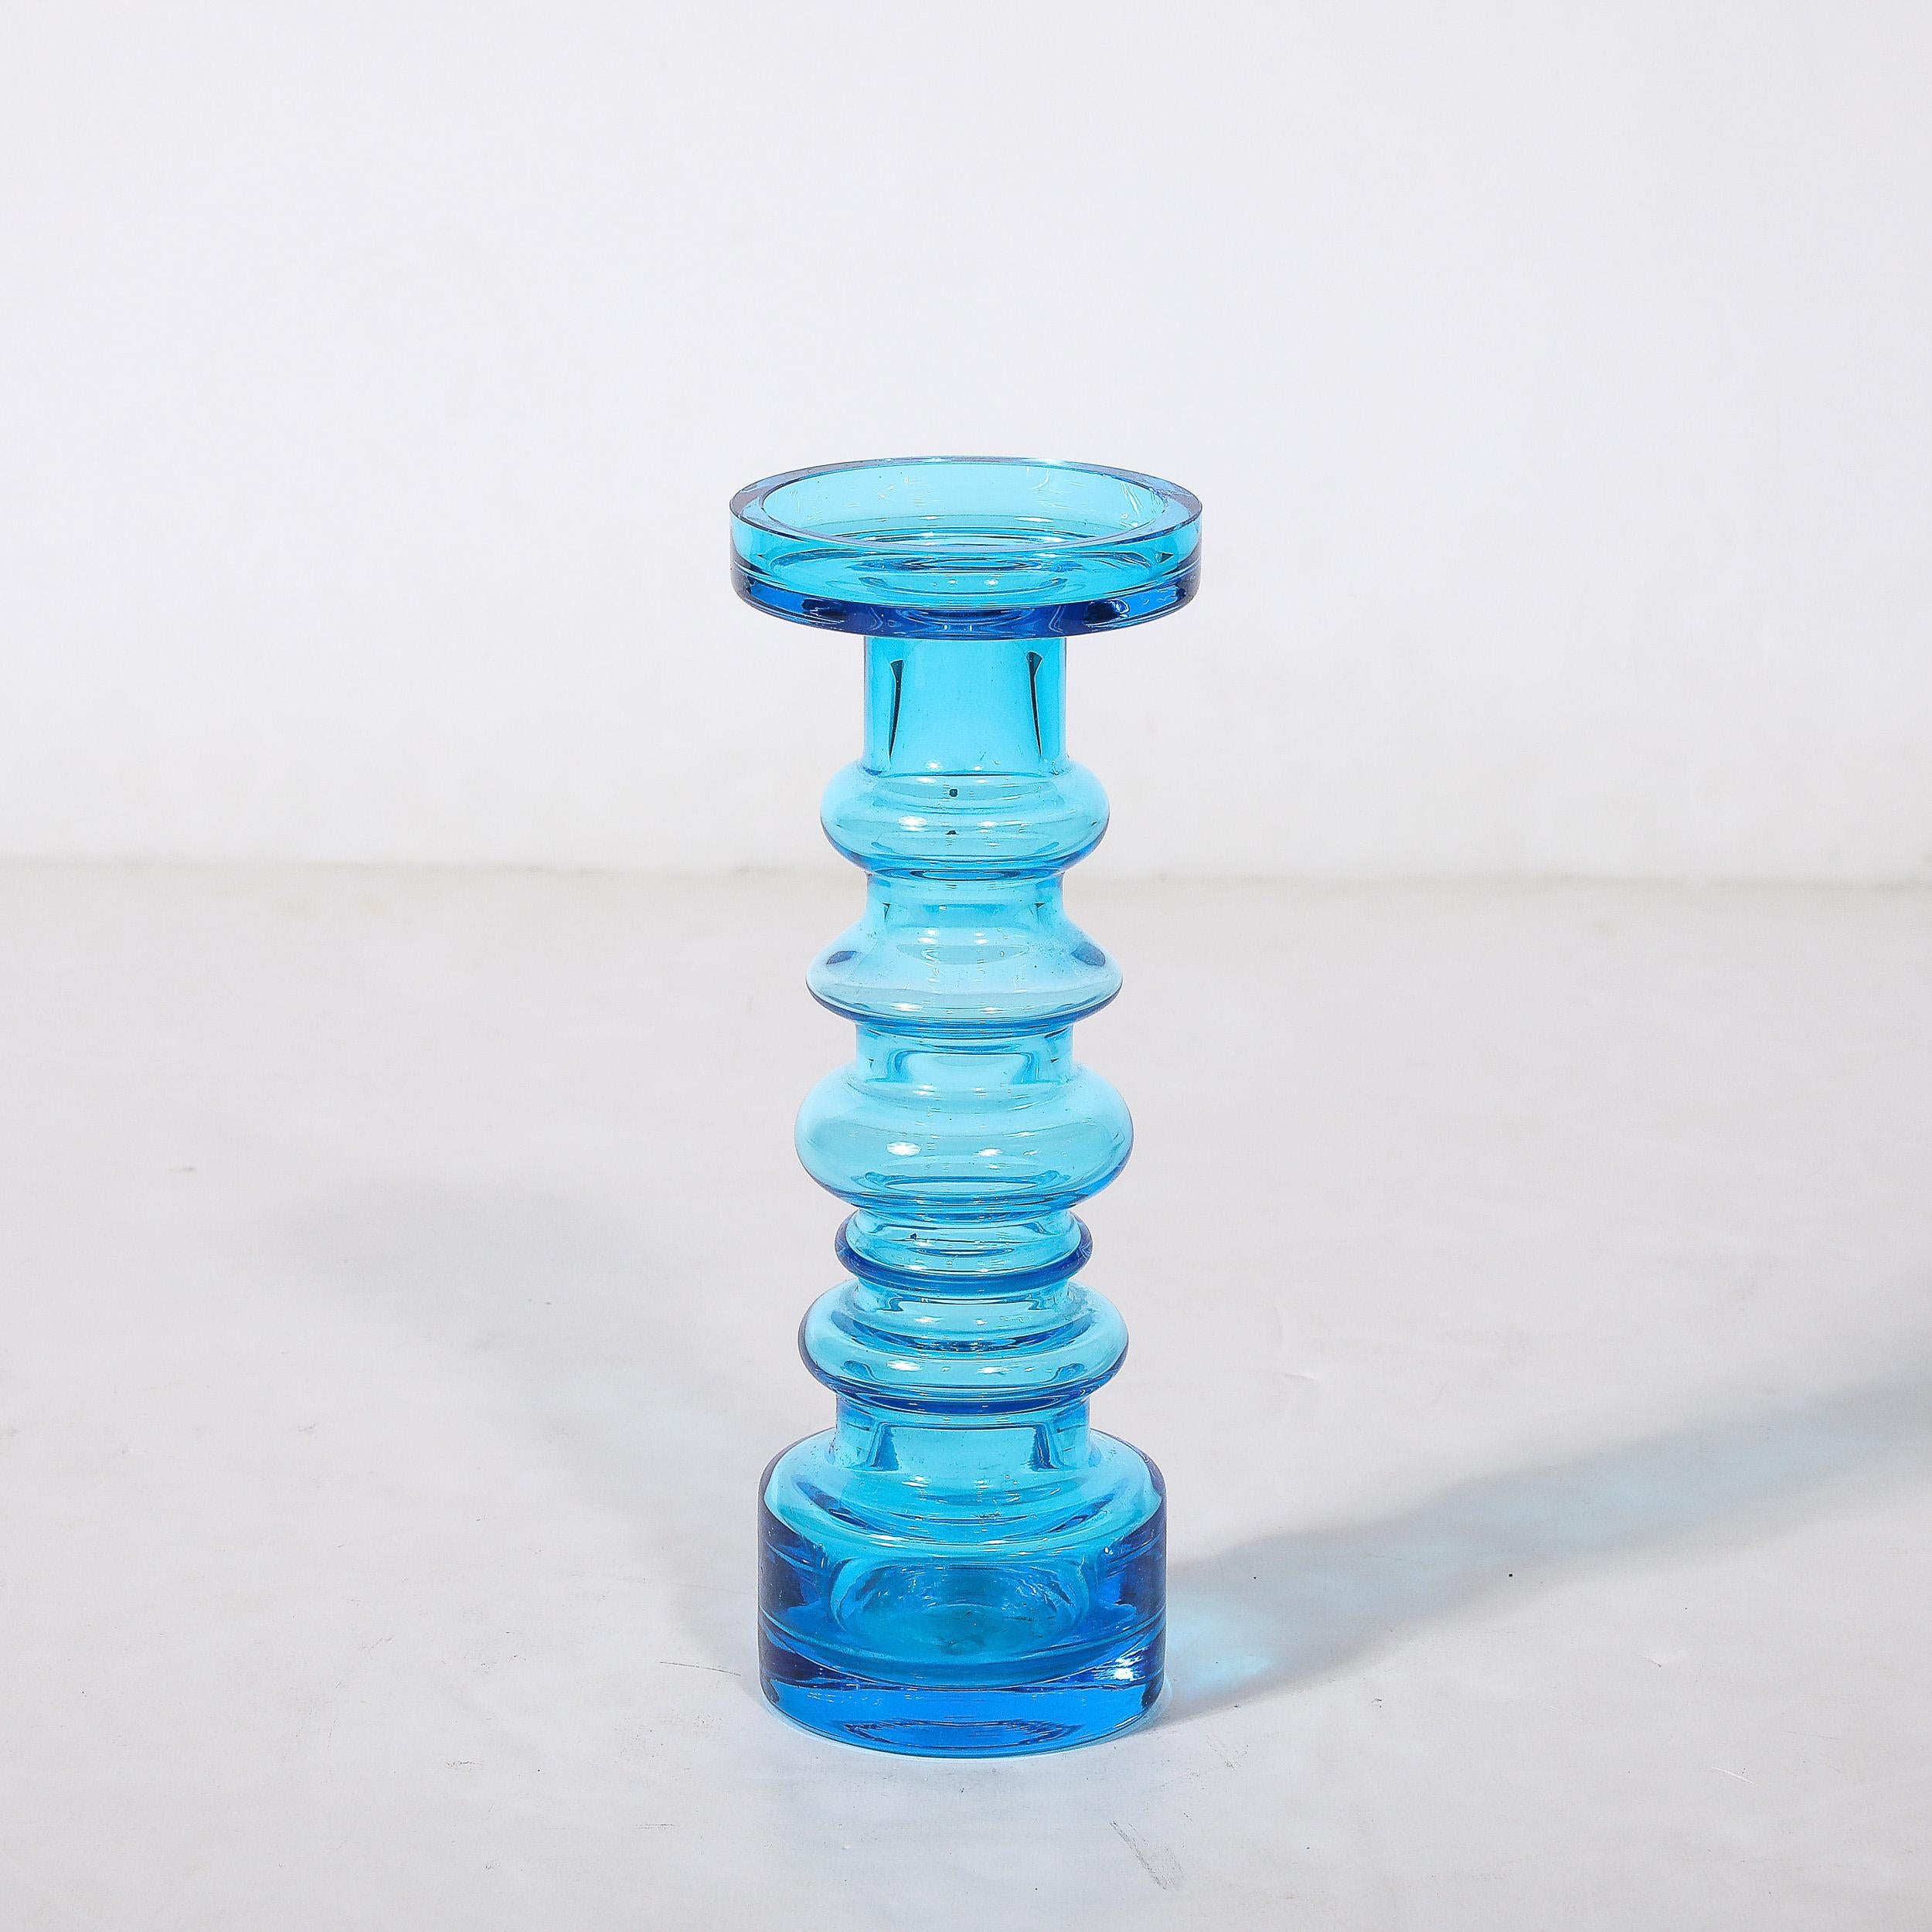 Ce magnifique vase en verre bleu soufflé à la main, de forme balustrade, est une création d'Oiva Toikka, originaire de Finlande et datant de 1960. Silhouette en forme de balustrade à plusieurs niveaux, en verre bleu translucide. Ce profil ondulé